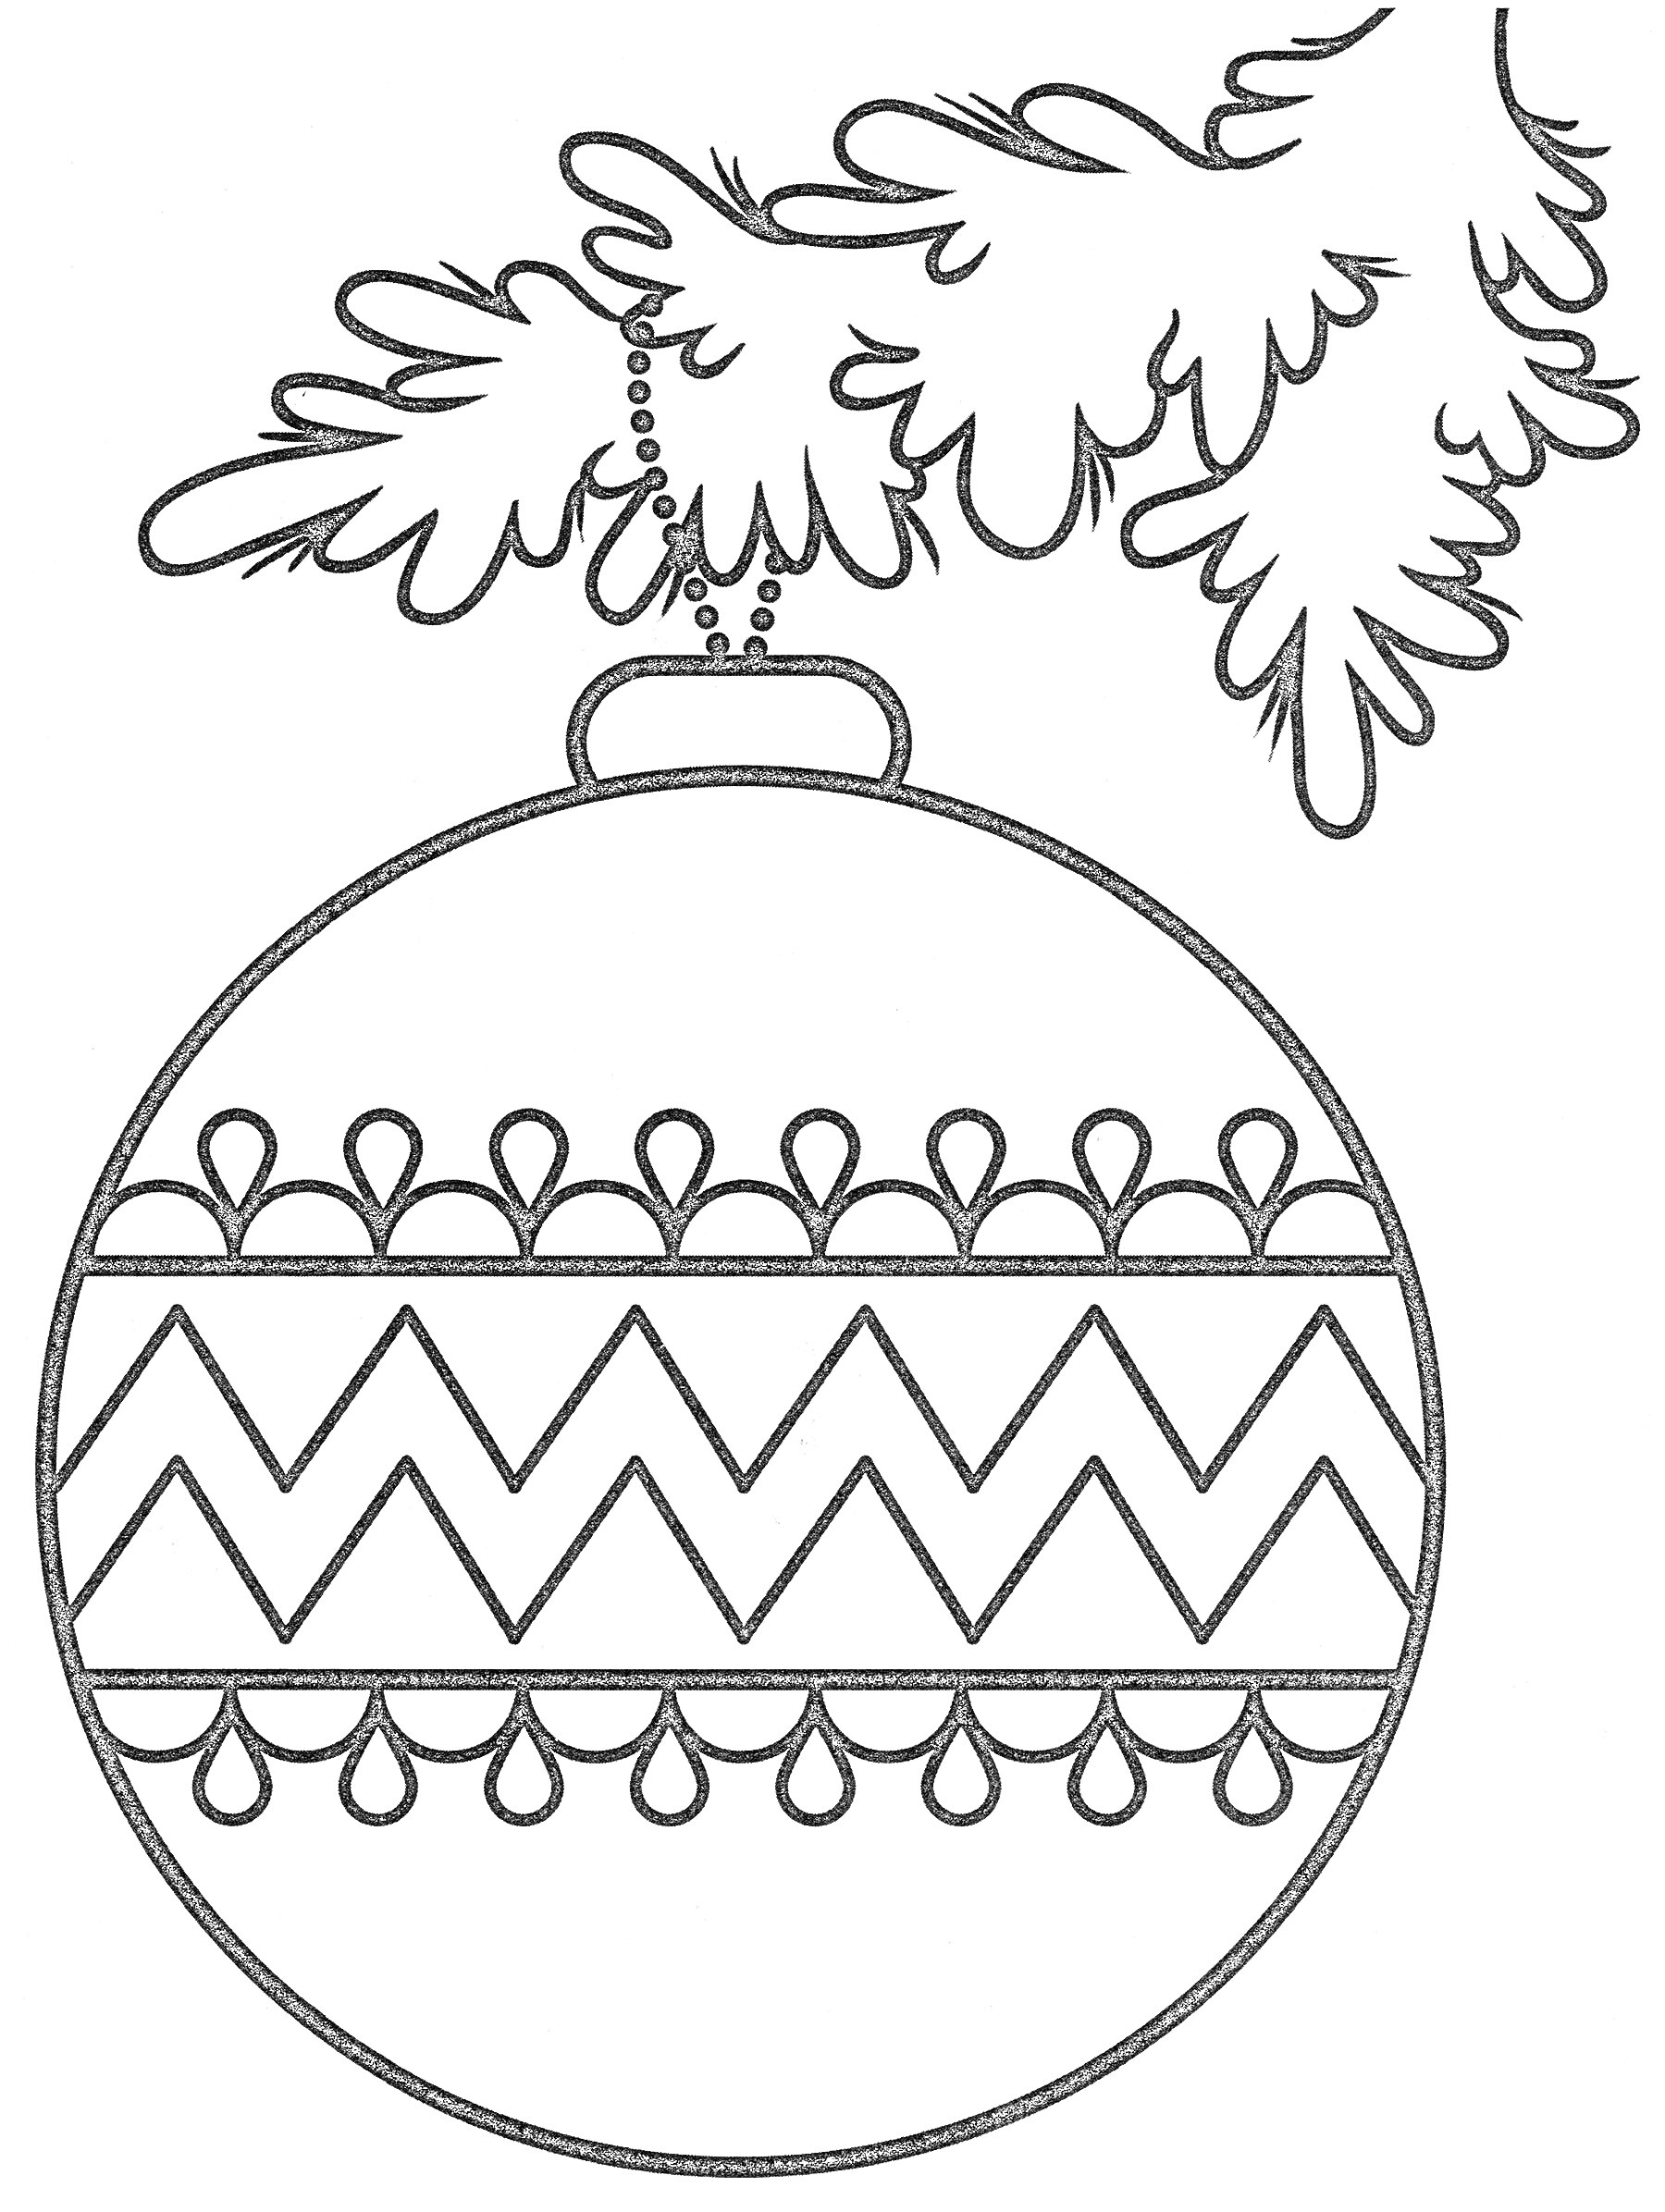 ёлочный шар с геометрическим узором, подвешенный на ветке ели